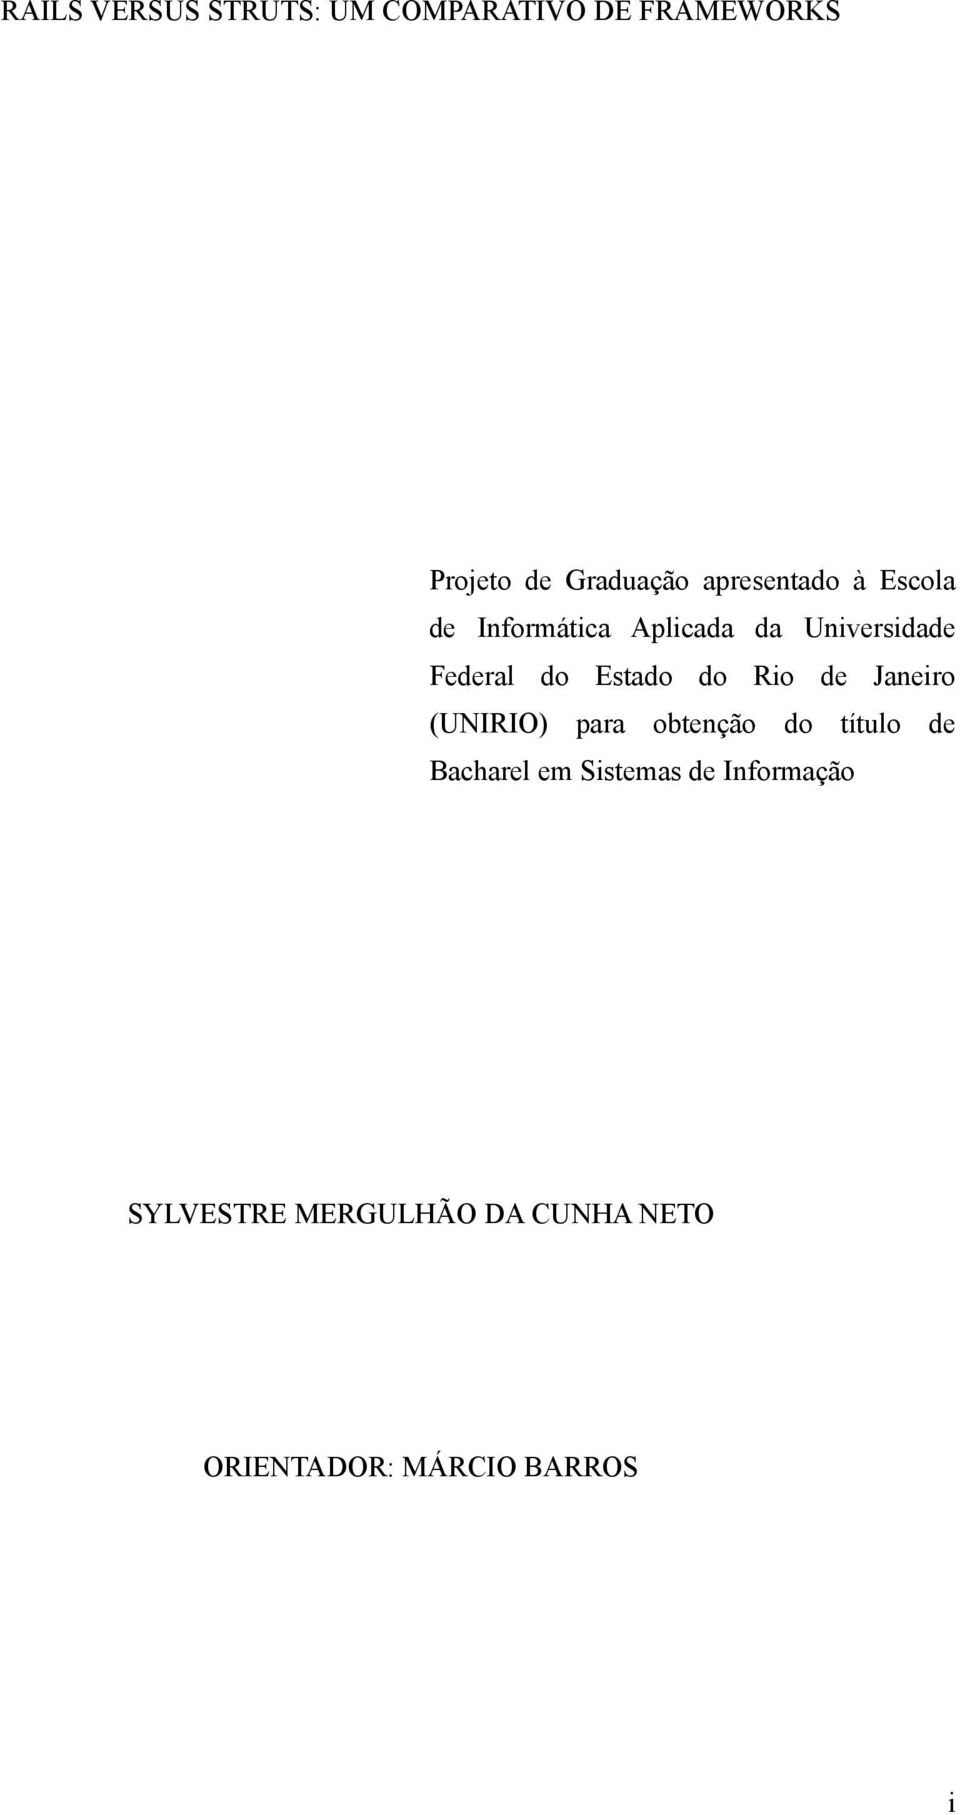 Estado do Rio de Janeiro (UNIRIO) para obtenção do título de Bacharel em